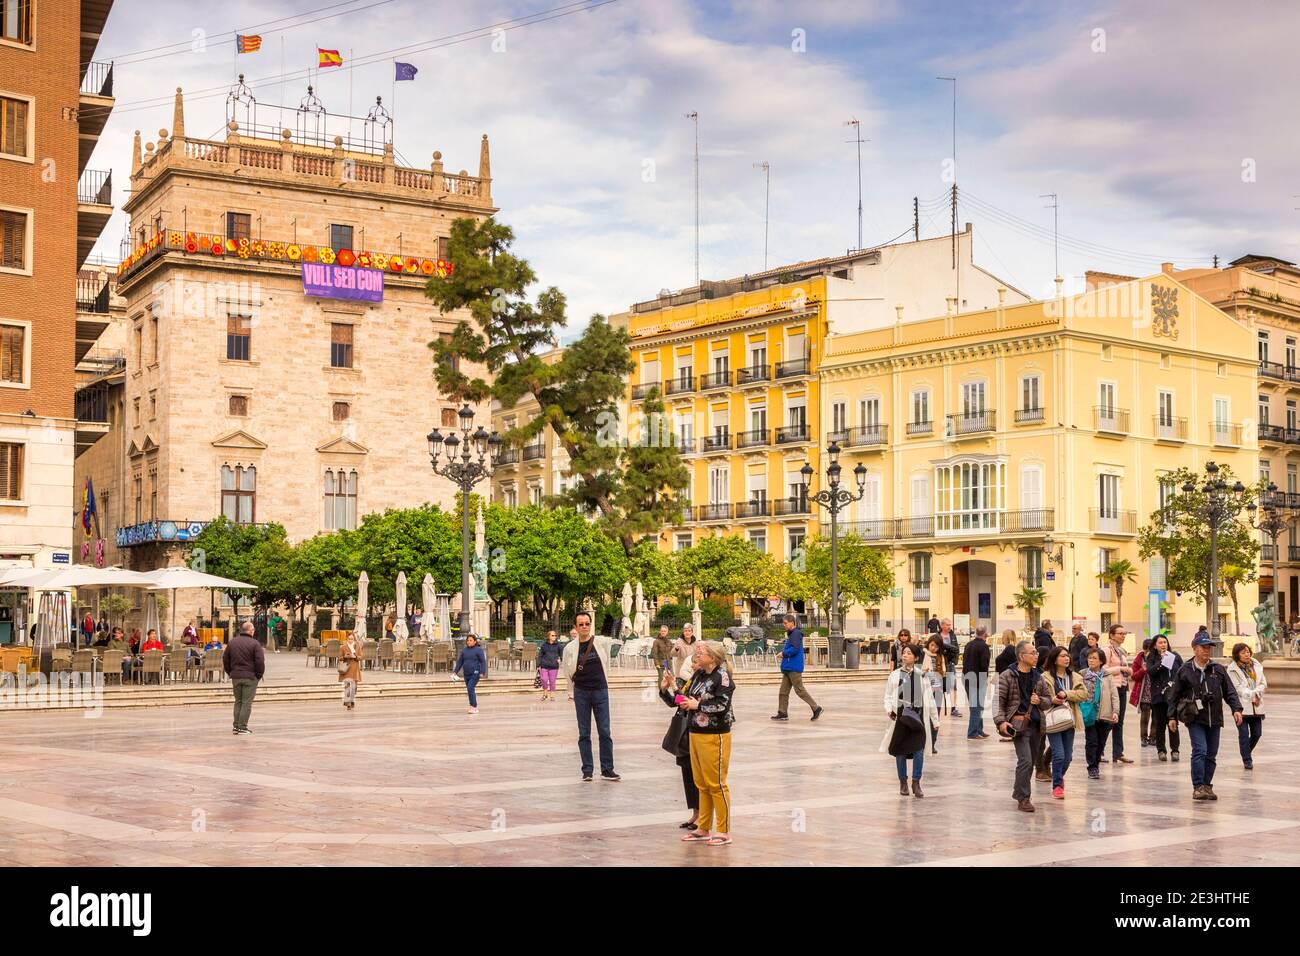 3 Mars 2020: Valence, Espagne - visiteurs à la Plaza del Virgen ou Placa de la Virge dans le centre de Valence. Banque D'Images